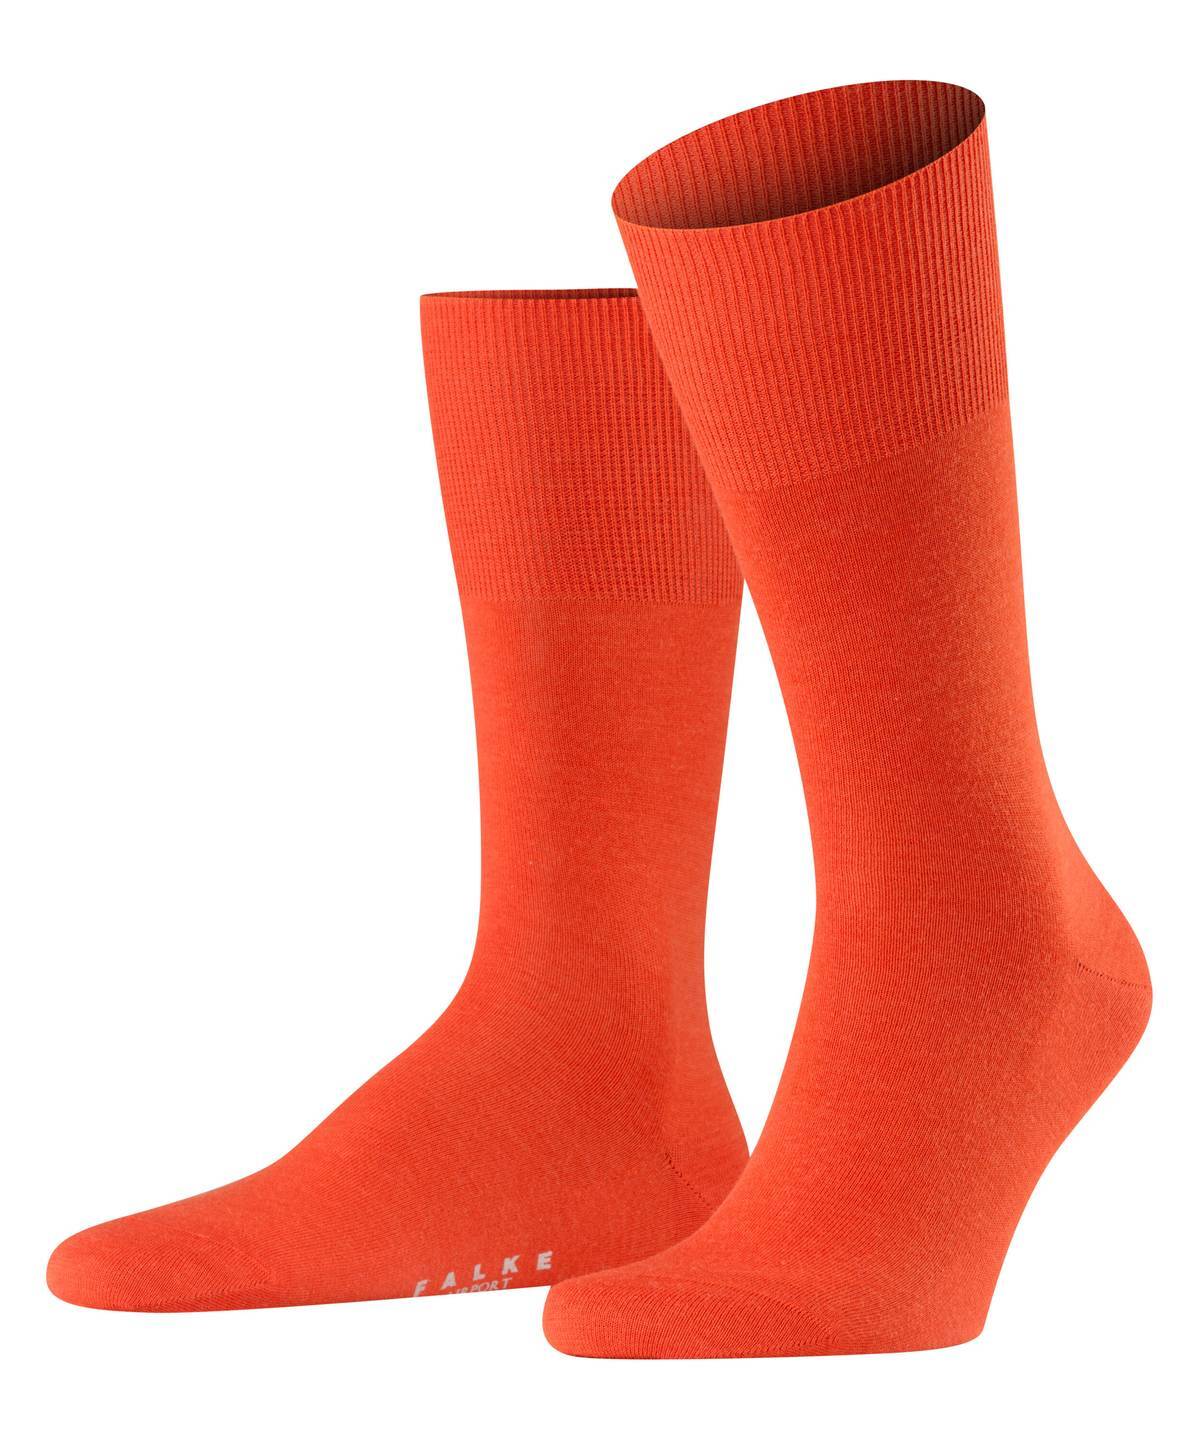 Falke Herren Socken Hersteller: Falke Bestellnummer:4004758680718